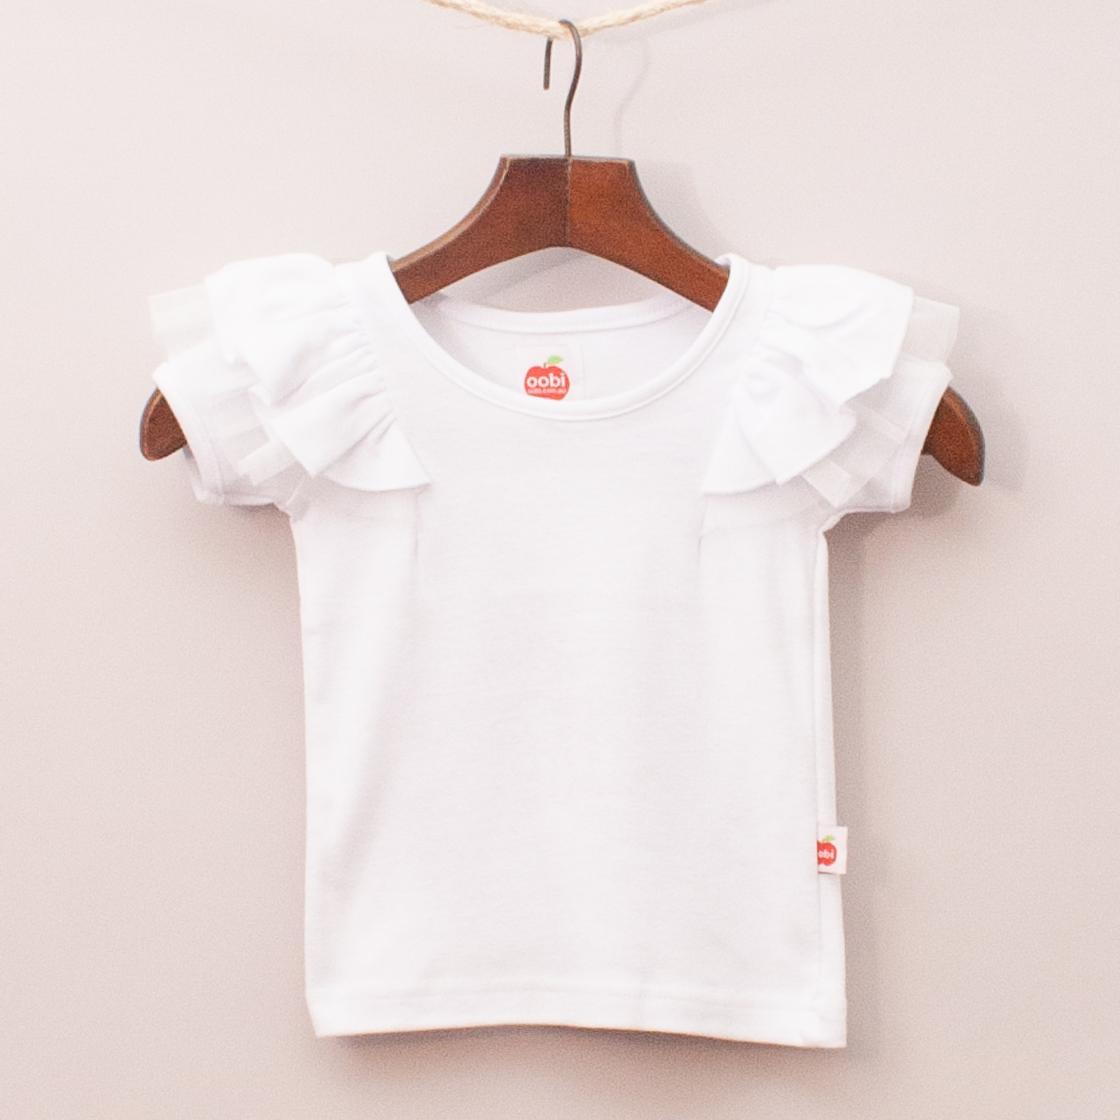 Oobi White Ruffle T-Shirt "Brand New"